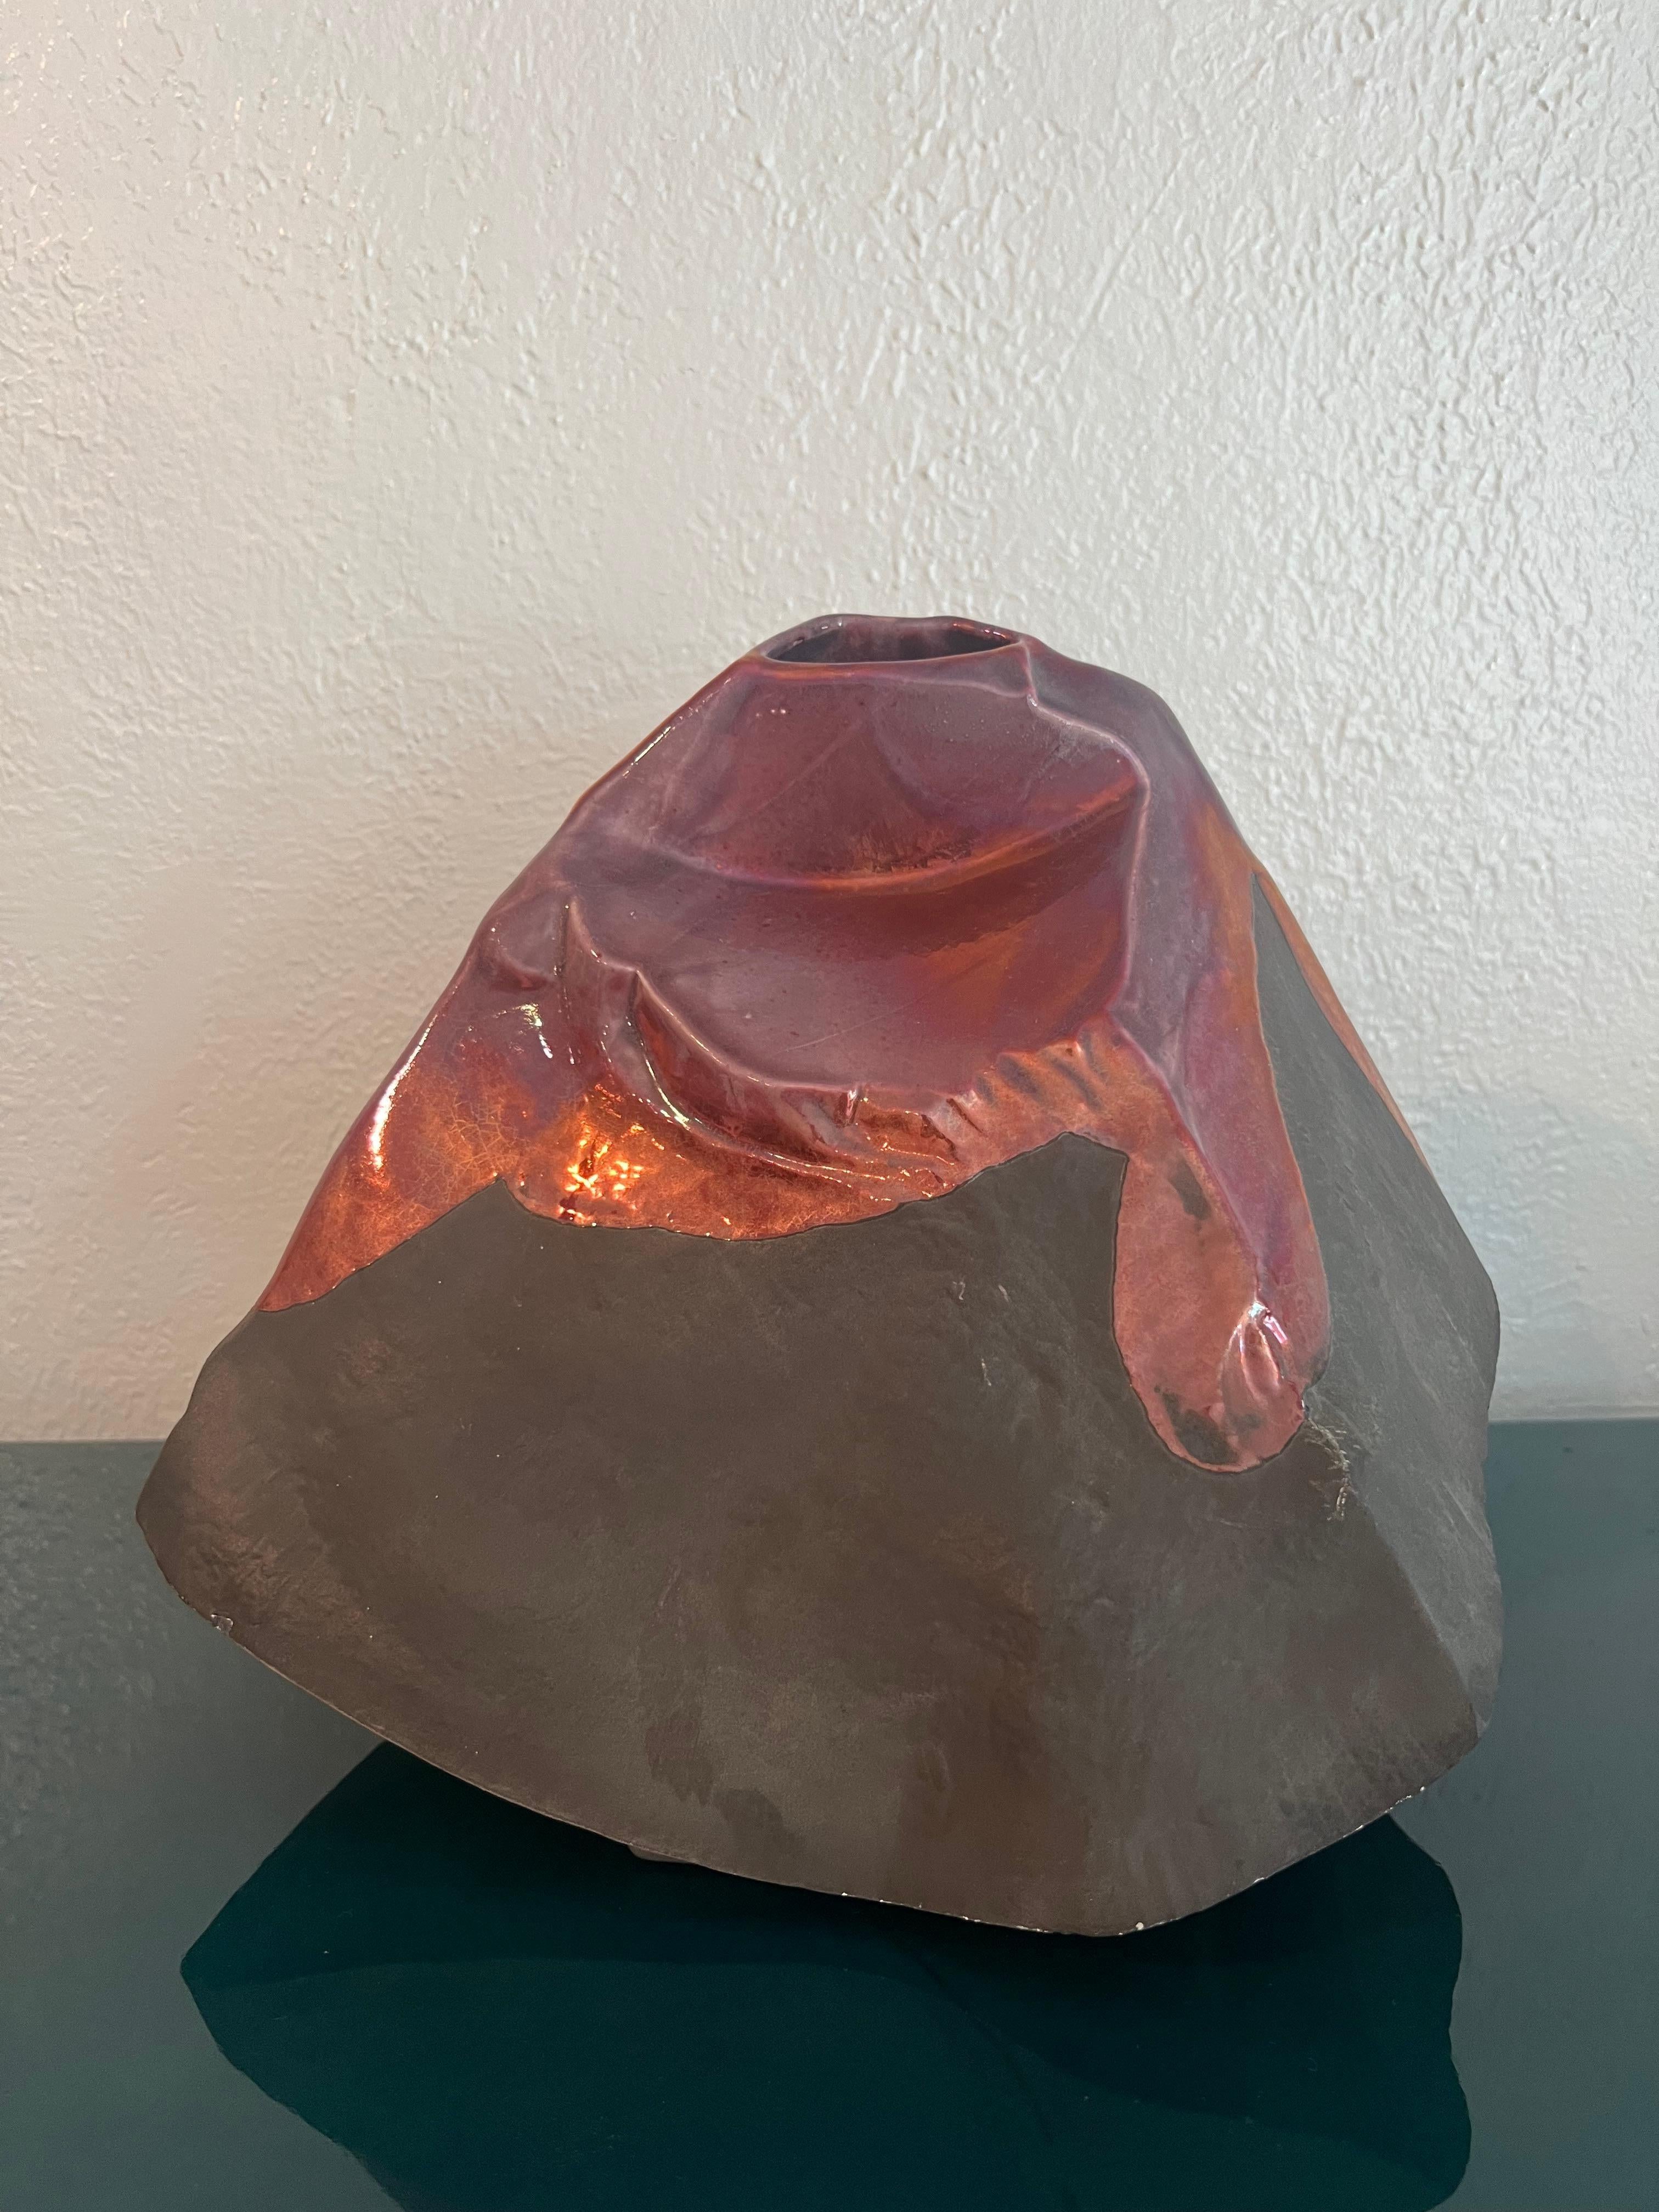 Tony Evans glasierte Raku-Vase. Seltene Form, möglicherweise in Form eines Vulkans. Leichte Gebrauchsspuren an der Oberfläche (siehe Fotos). Weitere Fotos sind auf Anfrage erhältlich. 

Es passt gut zu einer Vielzahl von Interieurs, wie z. B.